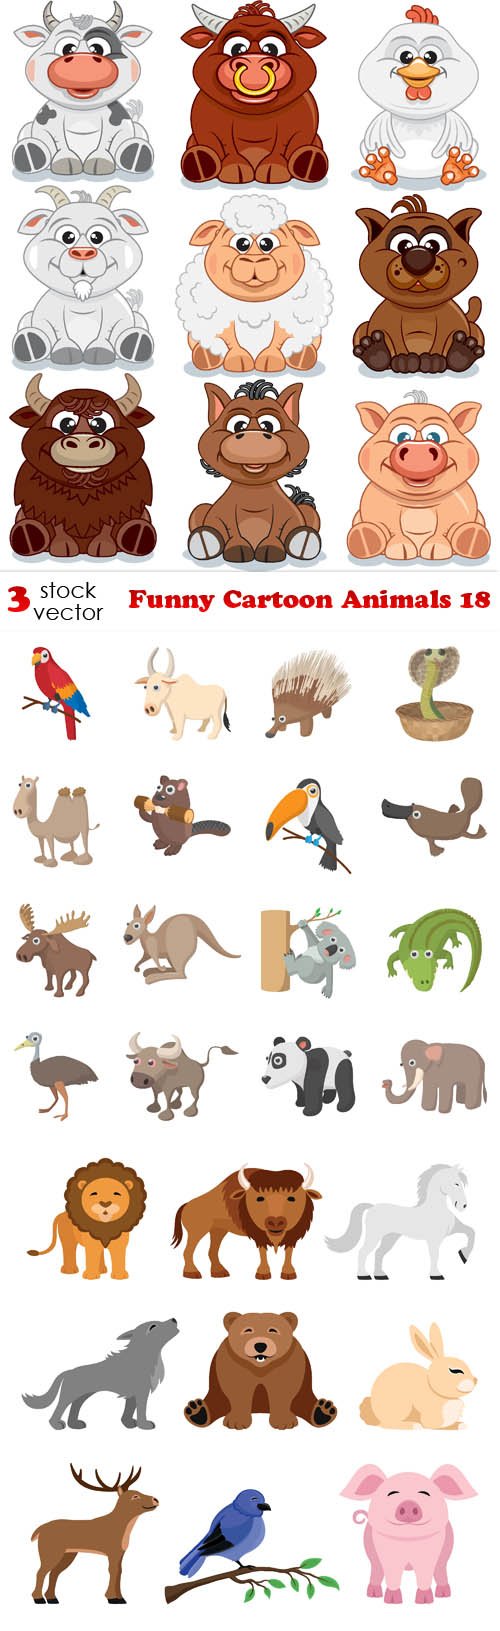 Vectors - Funny Cartoon Animals 18